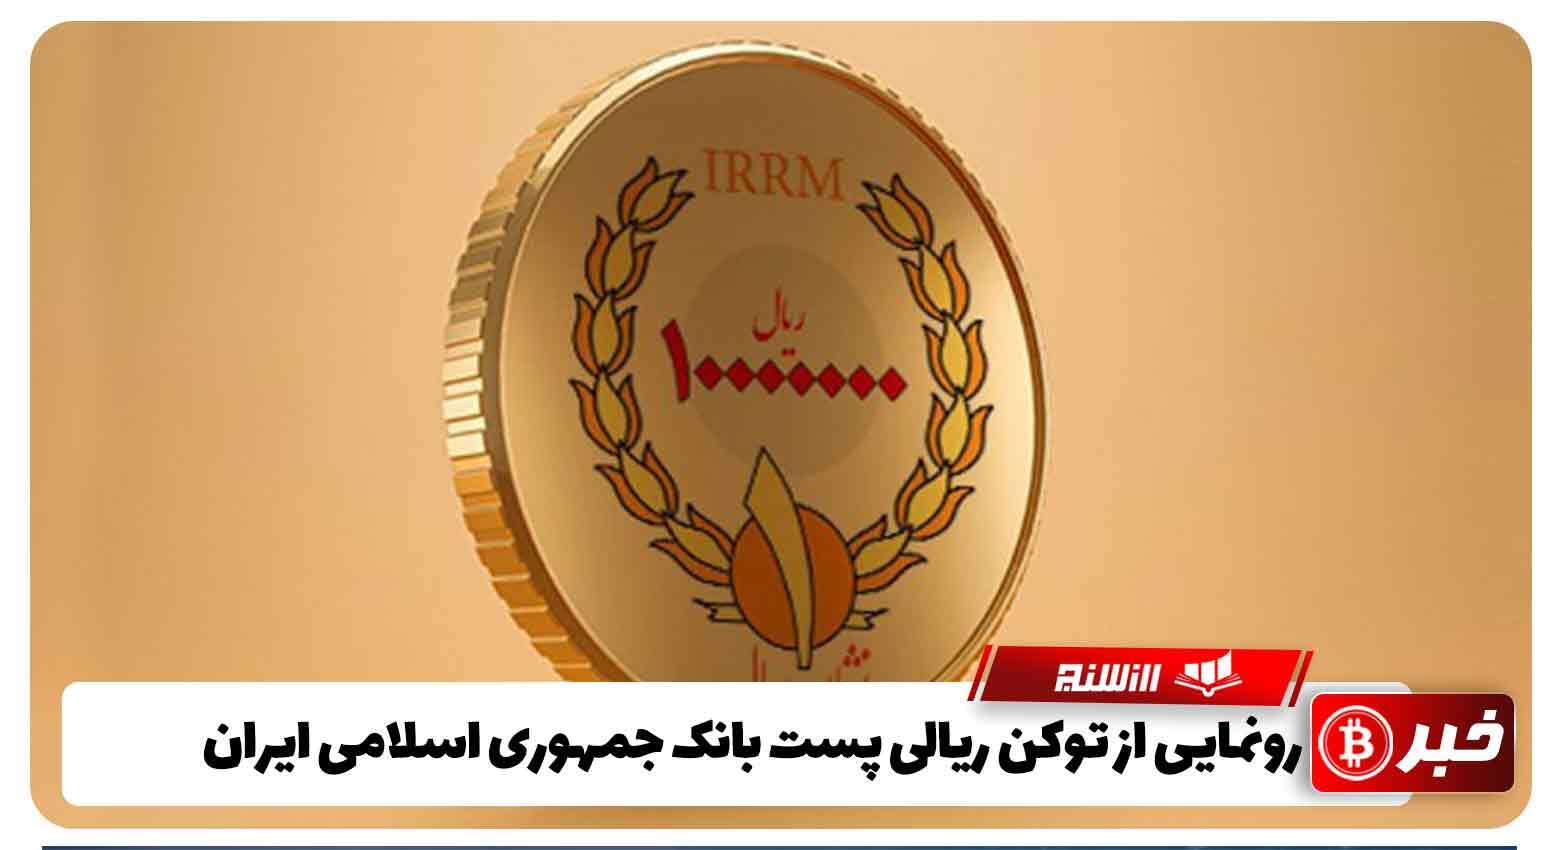 رونمایی از توکن ریالی پست بانک جمهوری اسلامی ایران